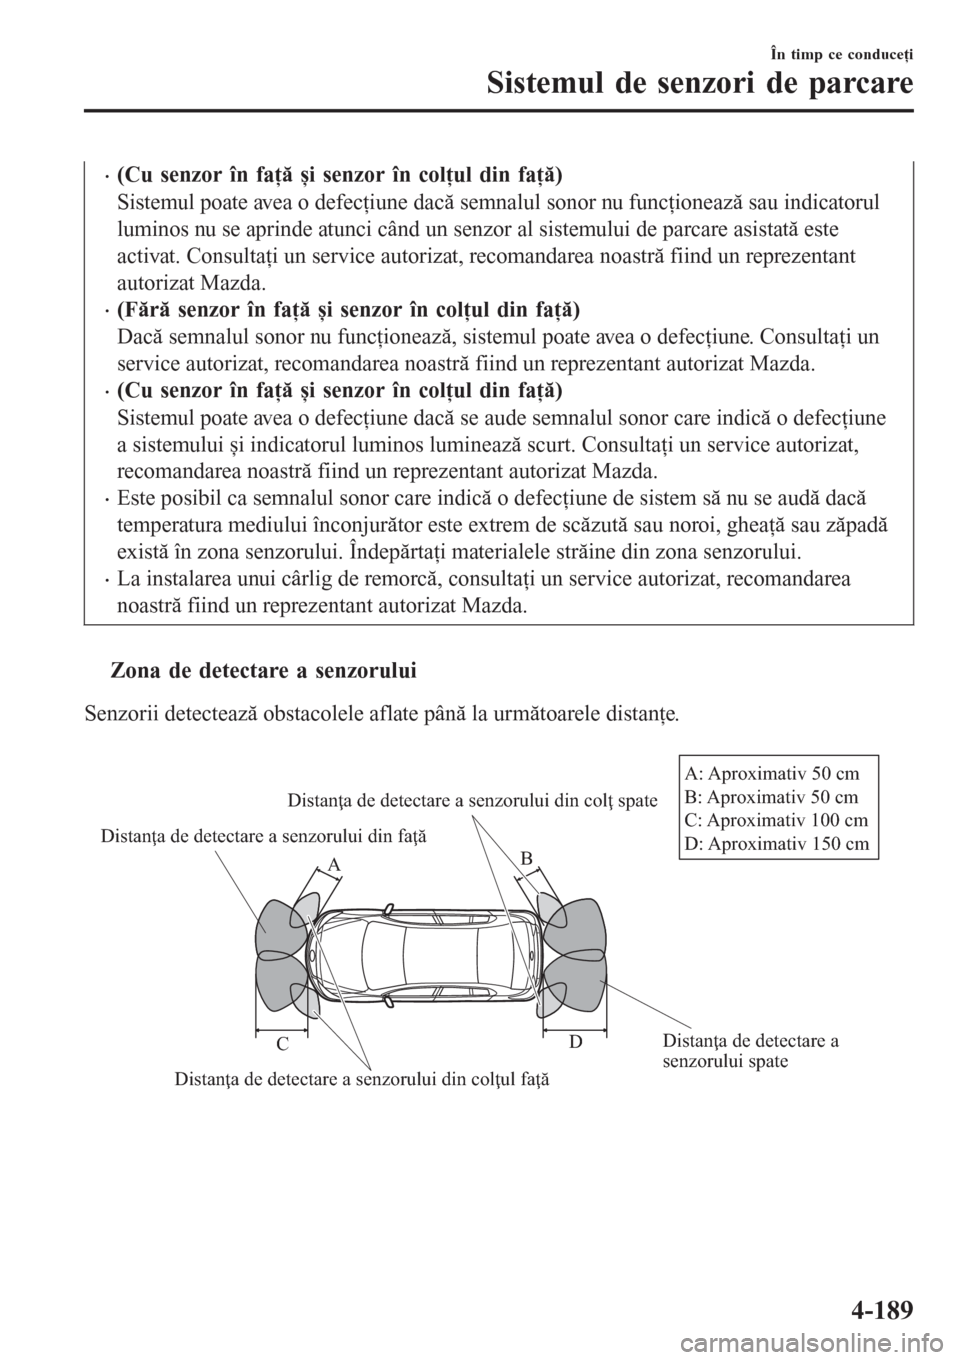 MAZDA MODEL 3 HATCHBACK 2015  Manualul de utilizare (in Romanian) •(Cu senzor în faţă și senzor în colţul din faţă)
Sistemul poate avea o defecţiune dacă semnalul sonor nu funcţionează sau indicatorul
luminos nu se aprinde atunci când un senzor al sis